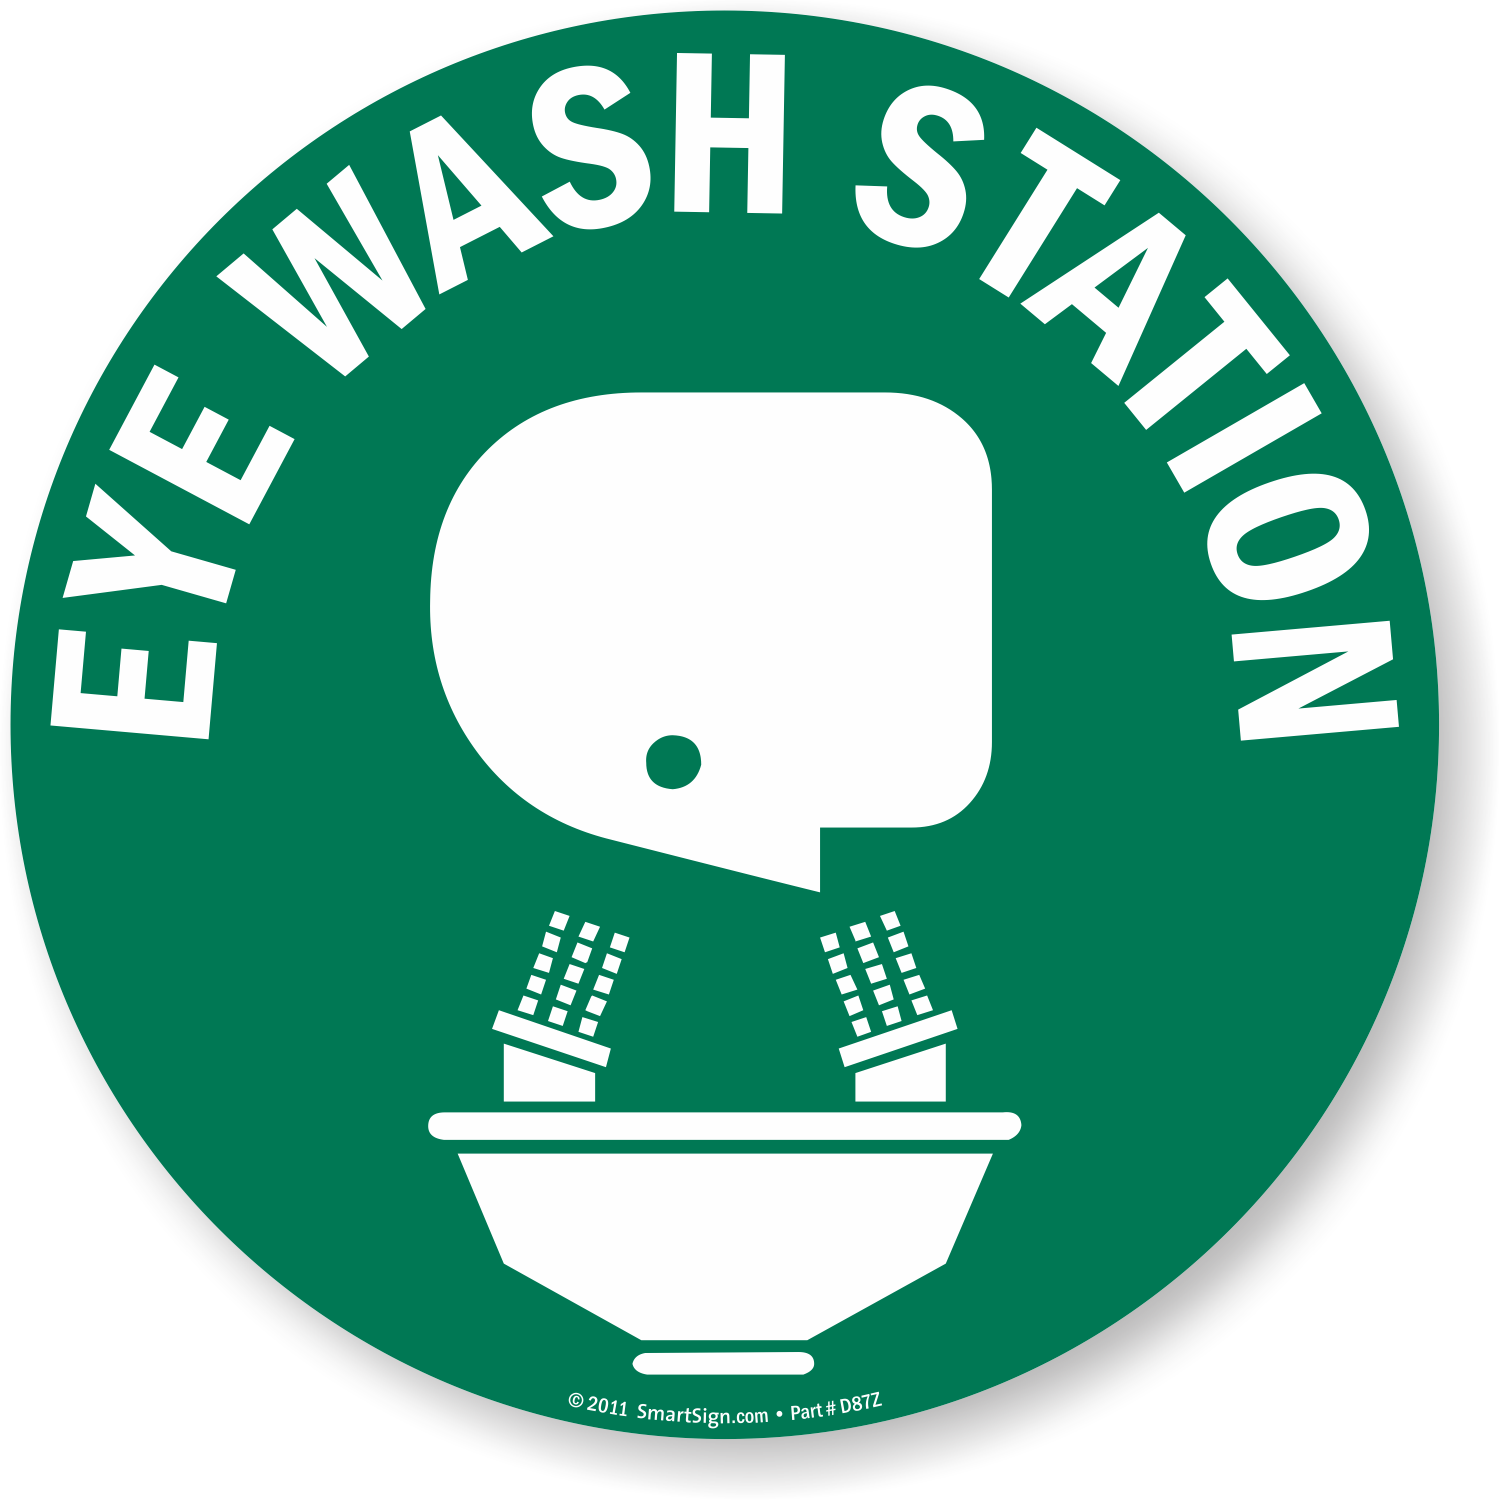 Printable Eye Wash Station Sign